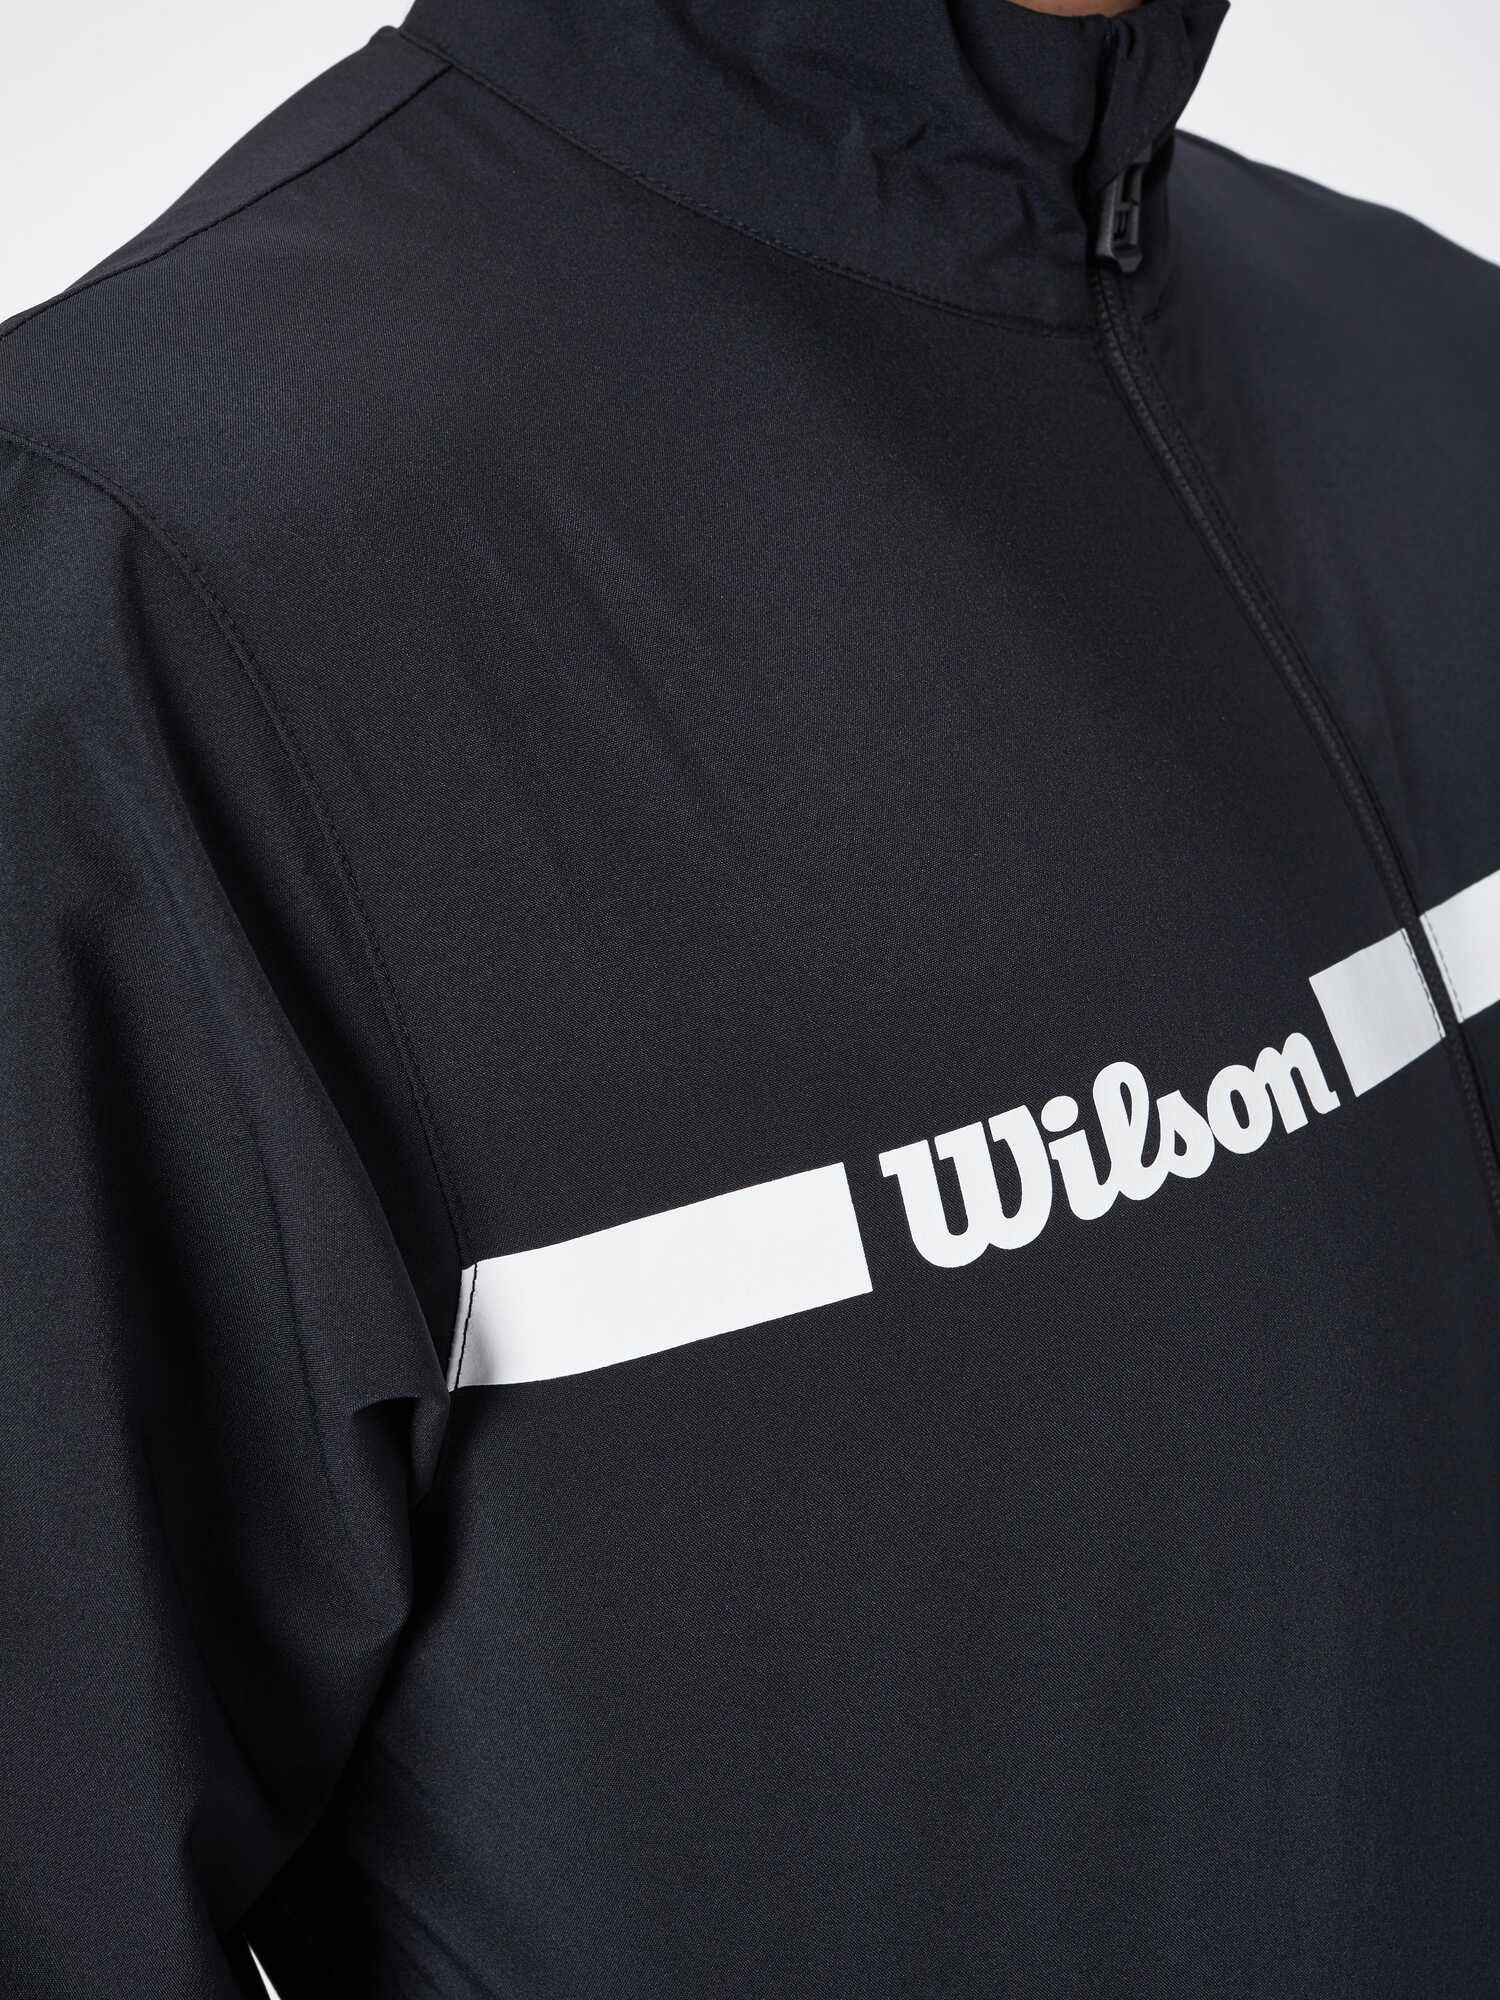 Polyester Schwarz/Weiß WRA765601 M Team Woven Jacket Wilson Herren Trainingsjacke Größe: 2XL 